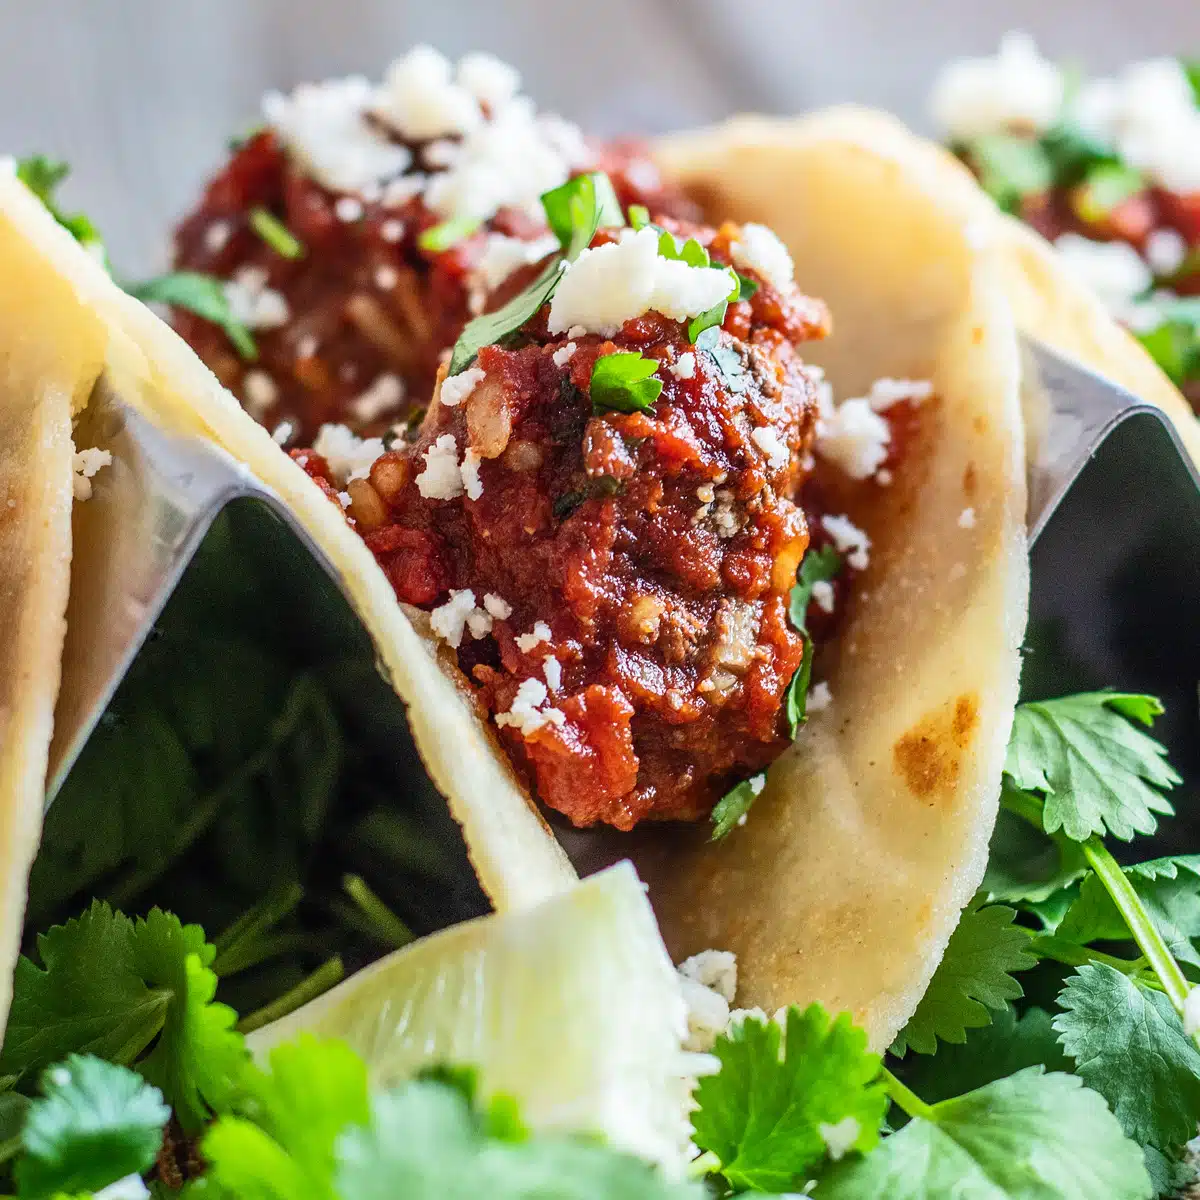 Lezzetli domates ve chipotle biber sosunda doyurucu Meksika köfteleri kullanan en iyi albondigas tacos tarifi.